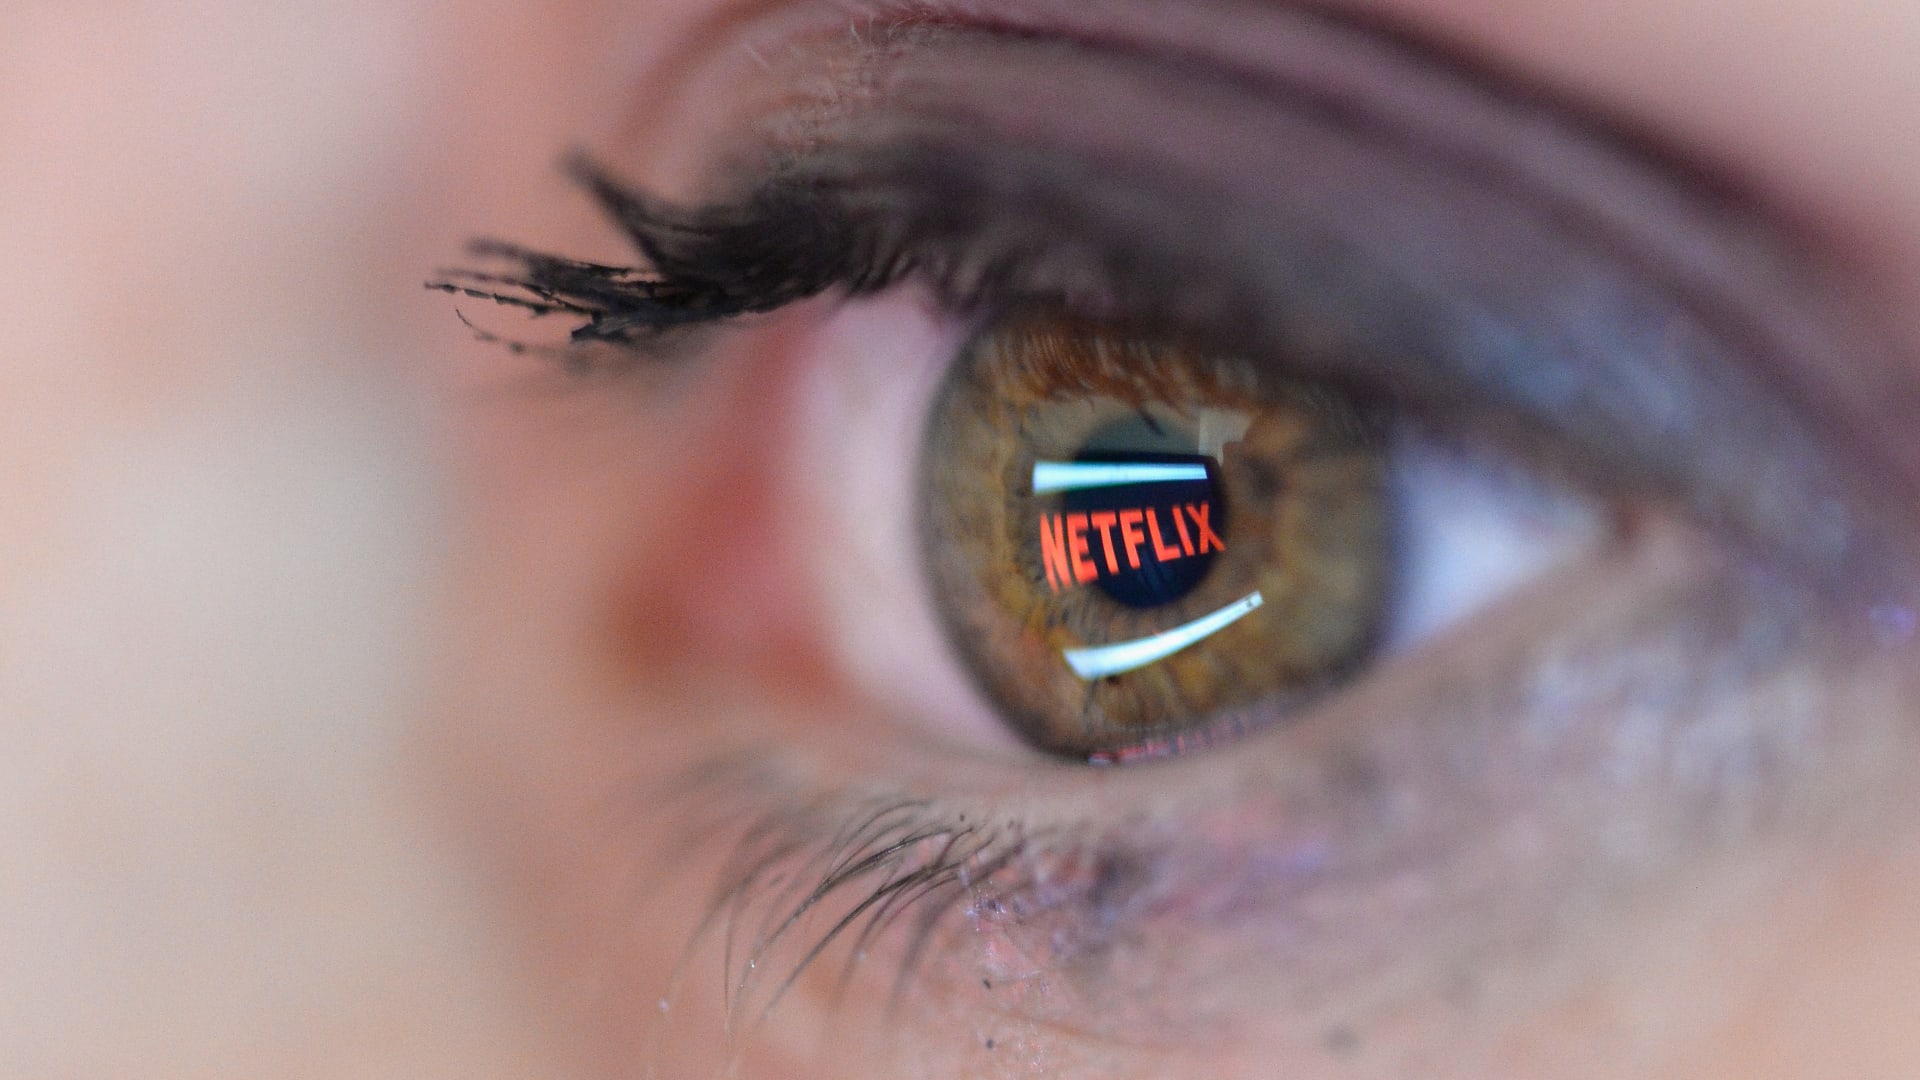 صورة توضيحية  ينعكس فيها شعار Netflix في عين امرأة